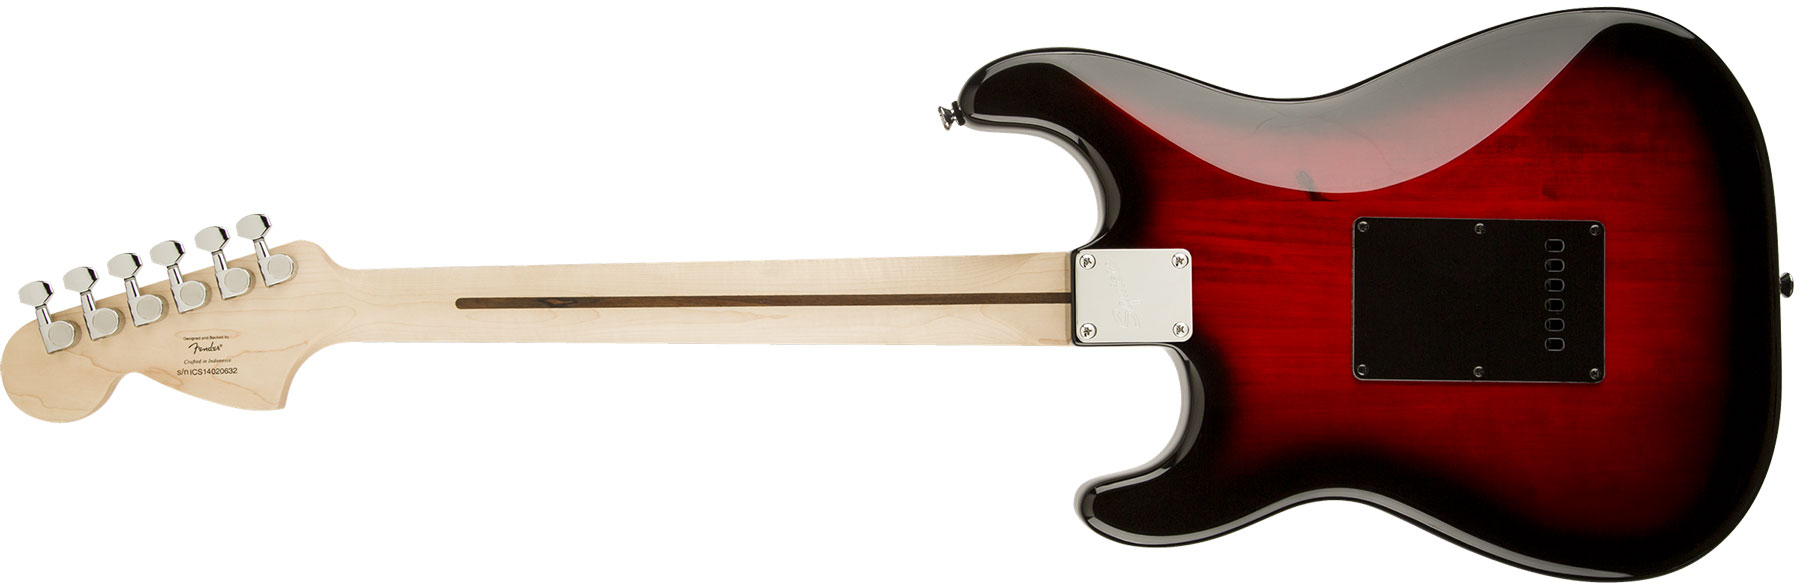 Squier Strat Standard Sss Lau - Antique Burst - E-Gitarre in Str-Form - Variation 1